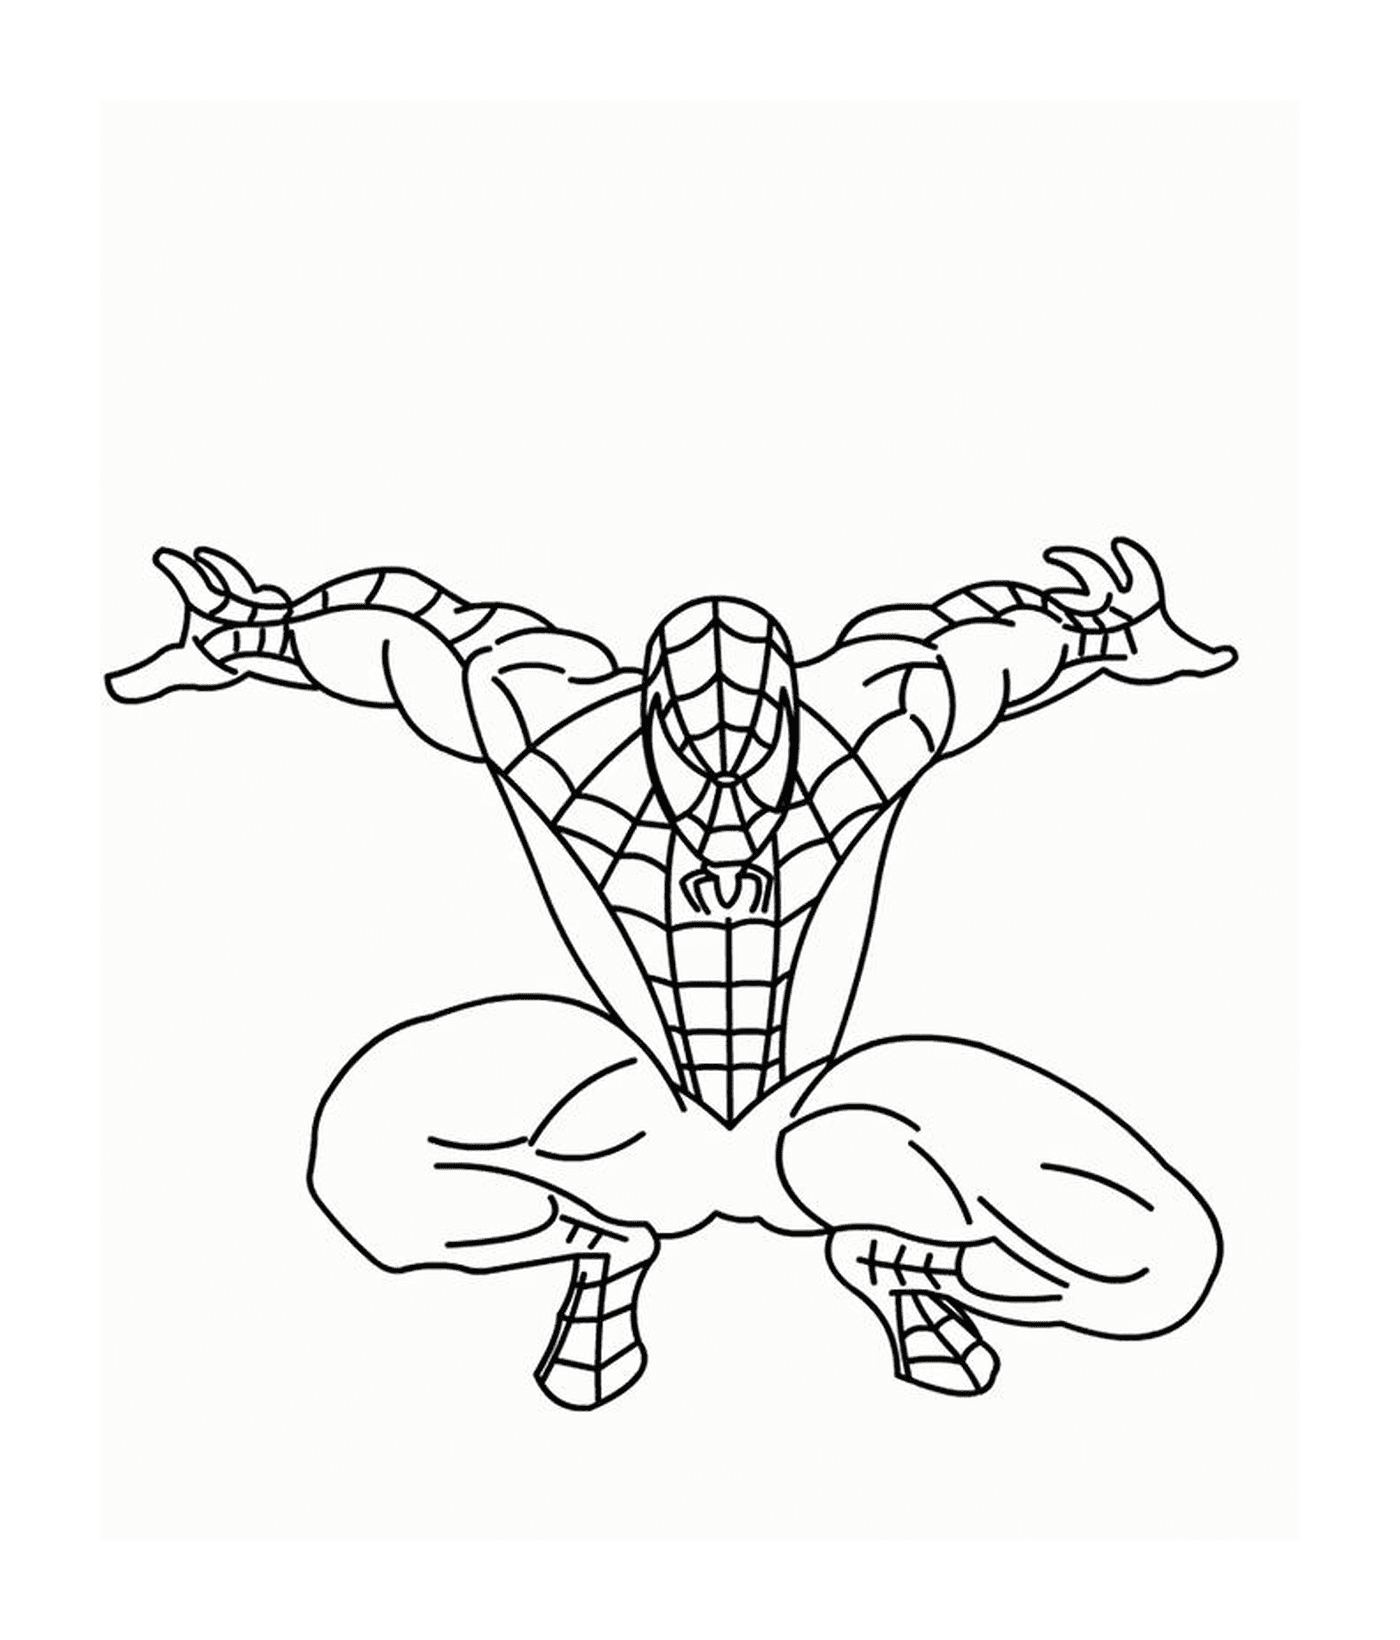  Homem-Aranha pronto para saltar 